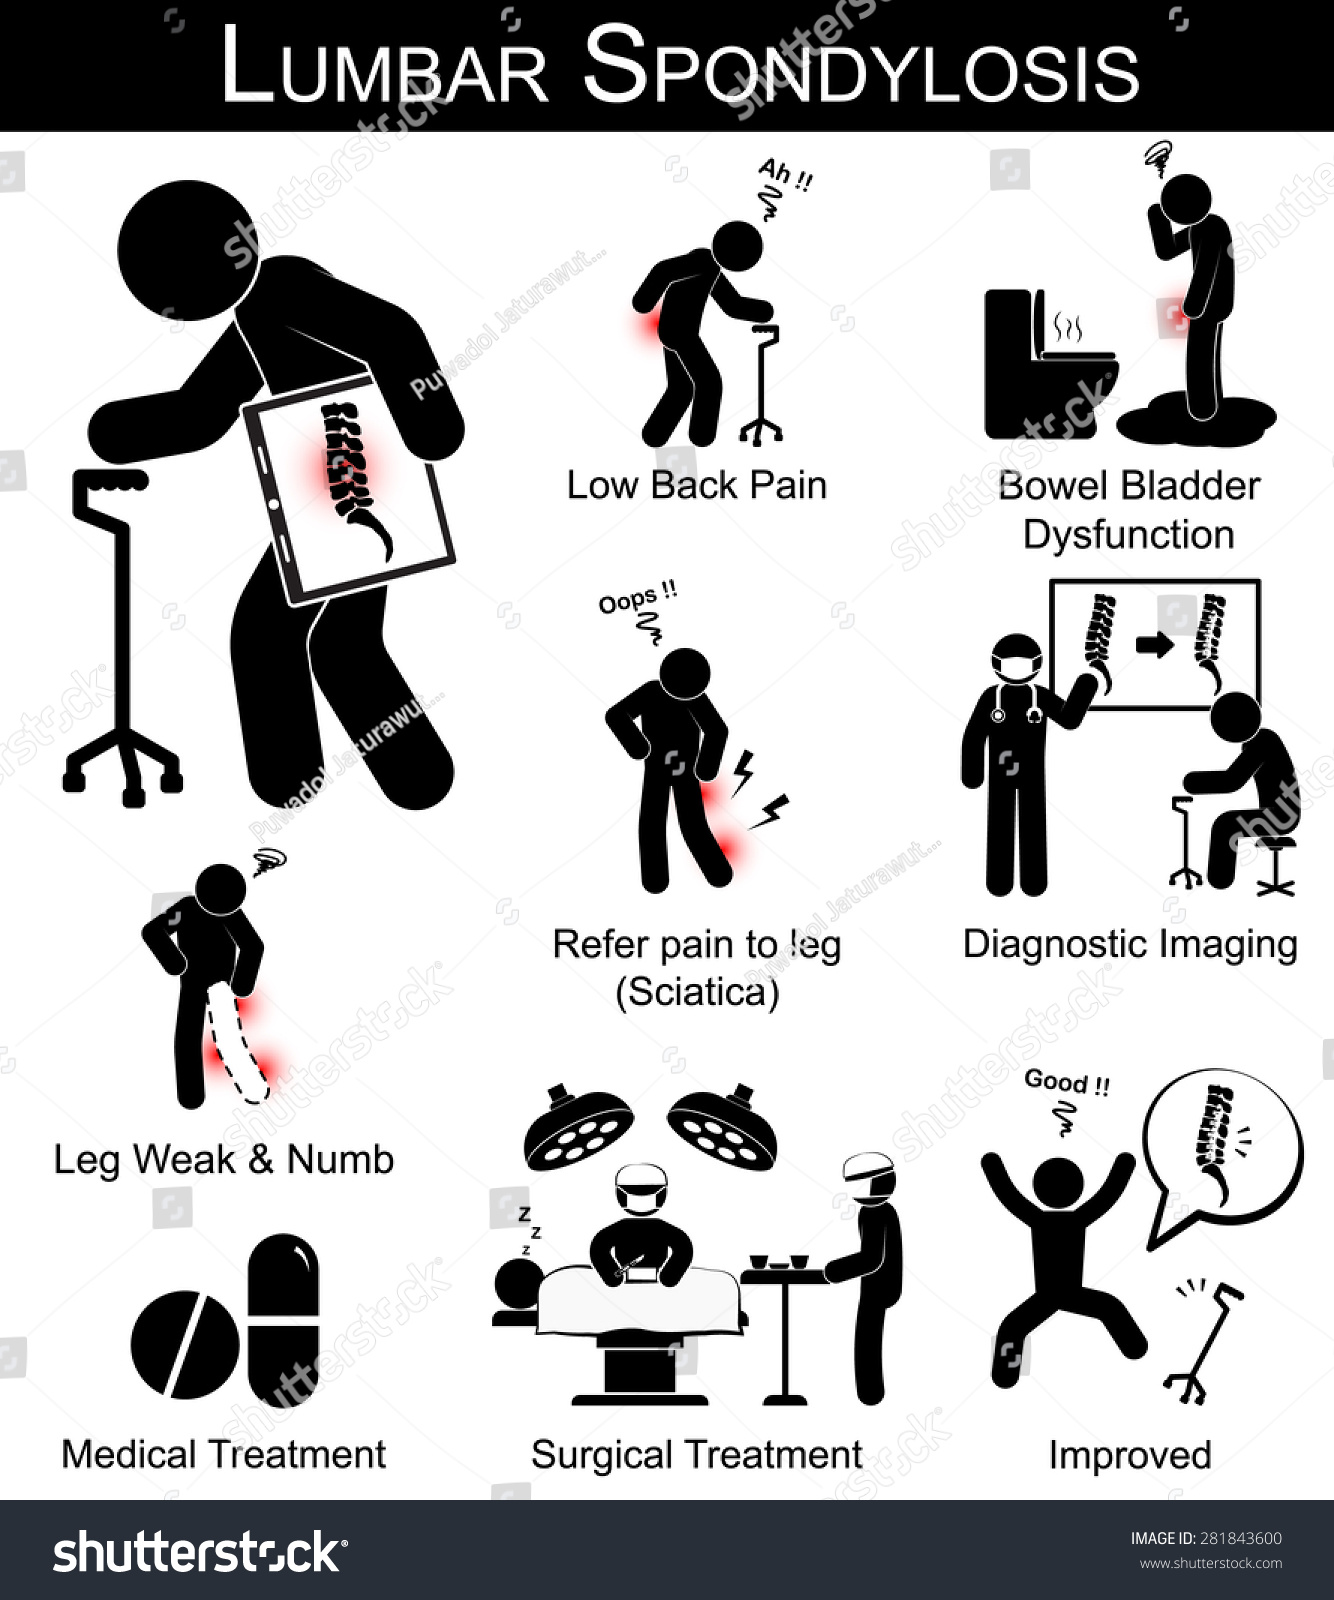 腰椎病症状的象形文字(腰痛,是指疼痛的腿,腿麻